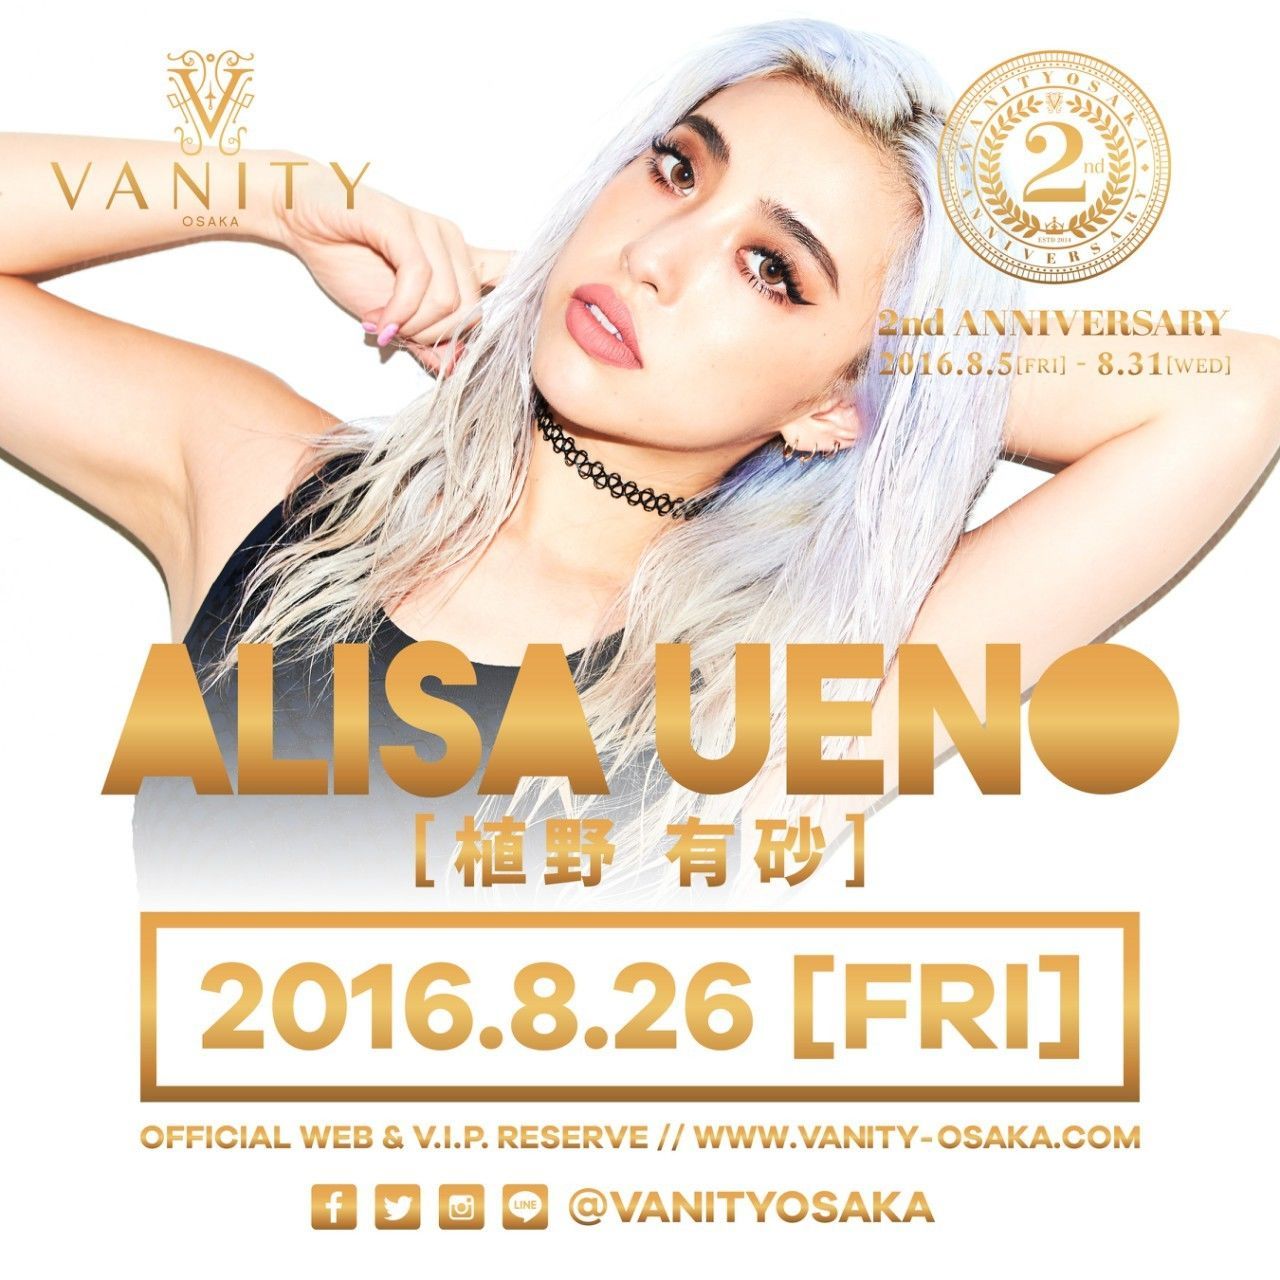 ★VANITY OSAKA 2nd Anniversary★ ファッションブランド「FIG&VIPER」クリエイティブディレクターであり、モデル、DJとしても活躍している植野 有砂 ALISA